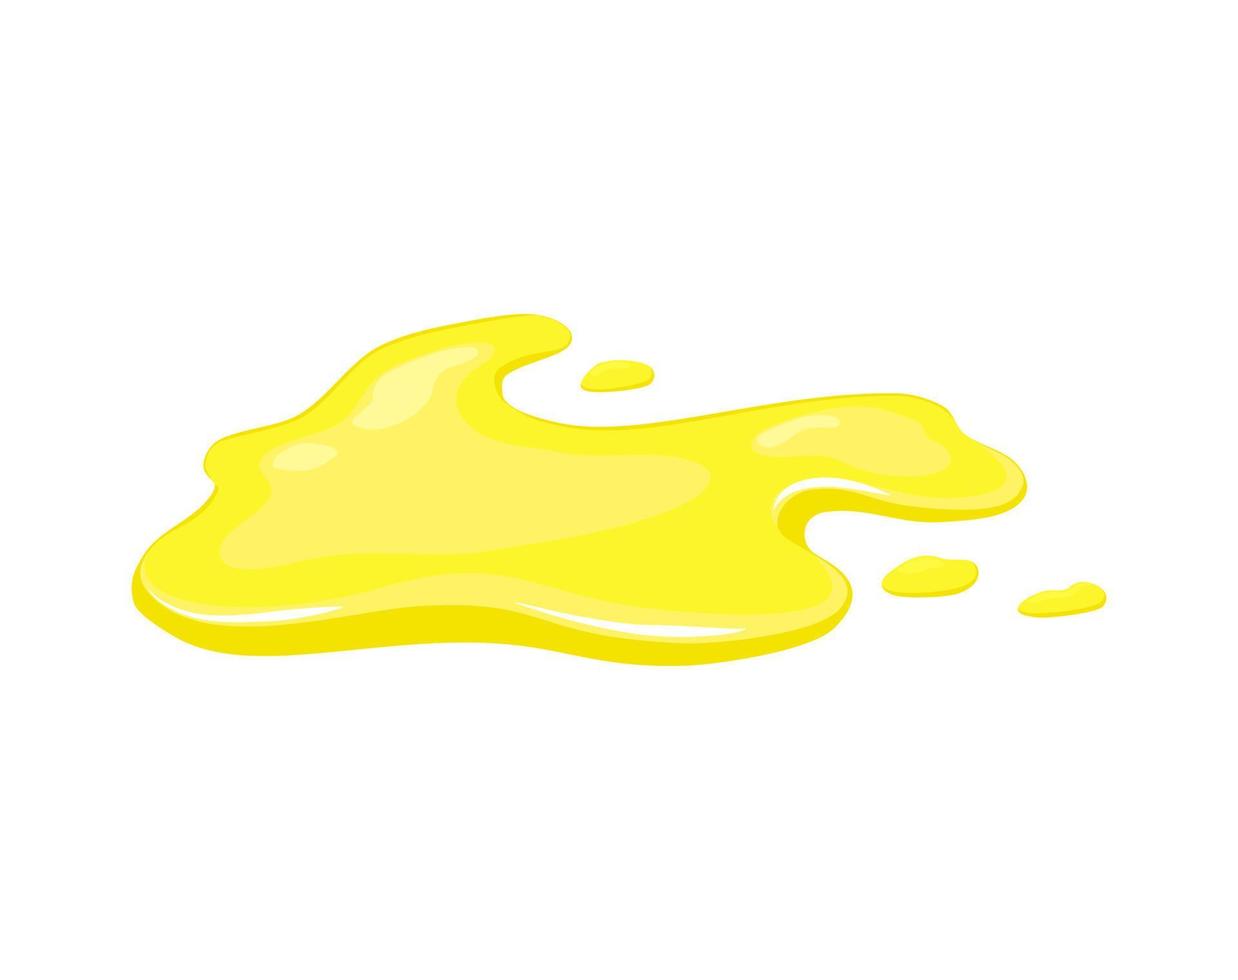 juice spill. gul pöl av vegetabilisk olja eller urin. tecknad vektorillustration. vektor